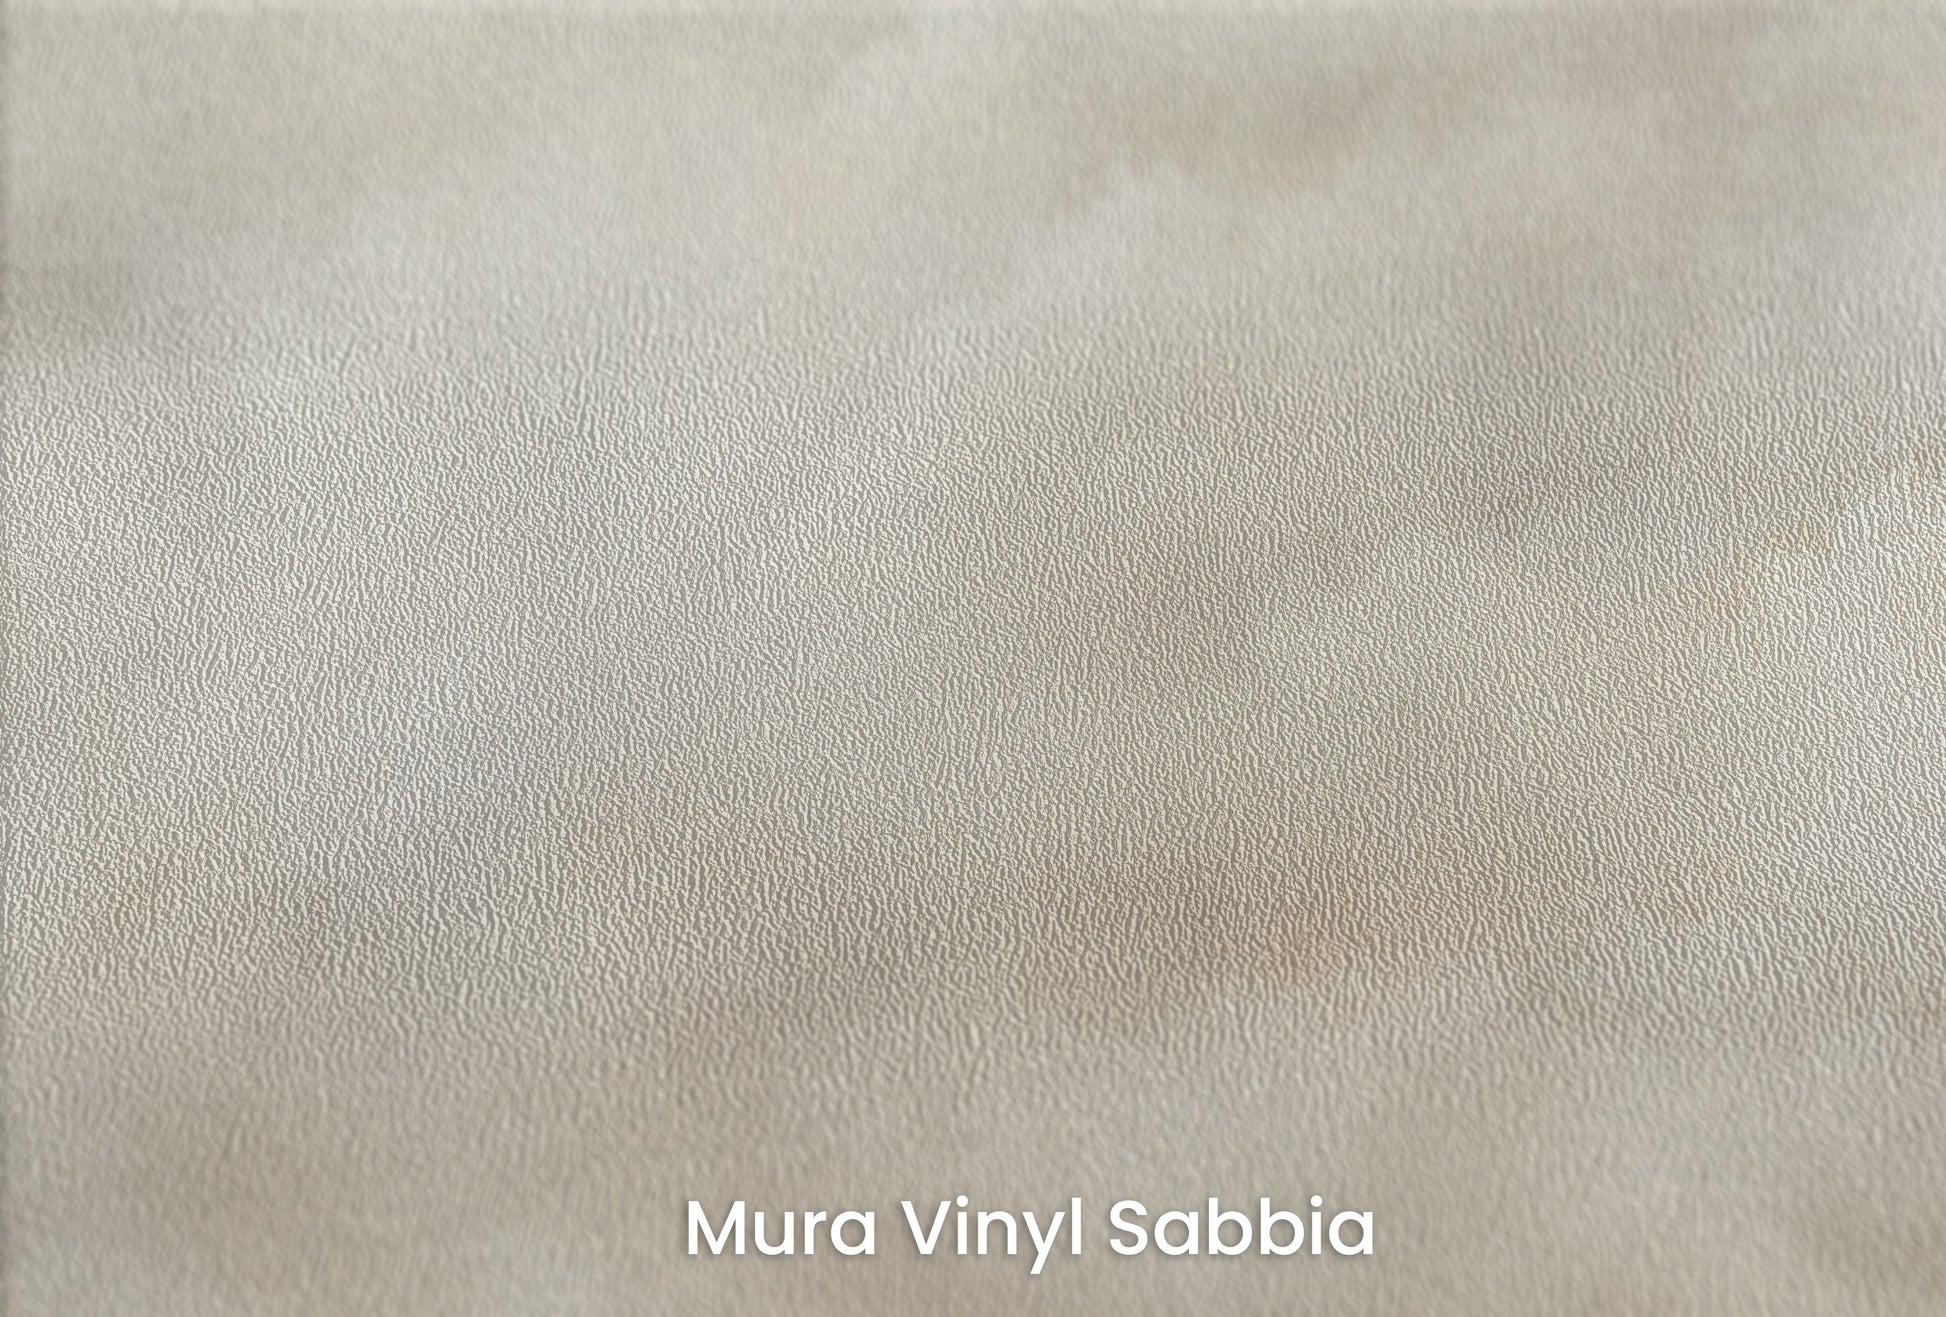 Zbliżenie na artystyczną fototapetę o nazwie CLOUDS OF SERENITY CANVAS na podłożu Mura Vinyl Sabbia struktura grubego ziarna piasku.